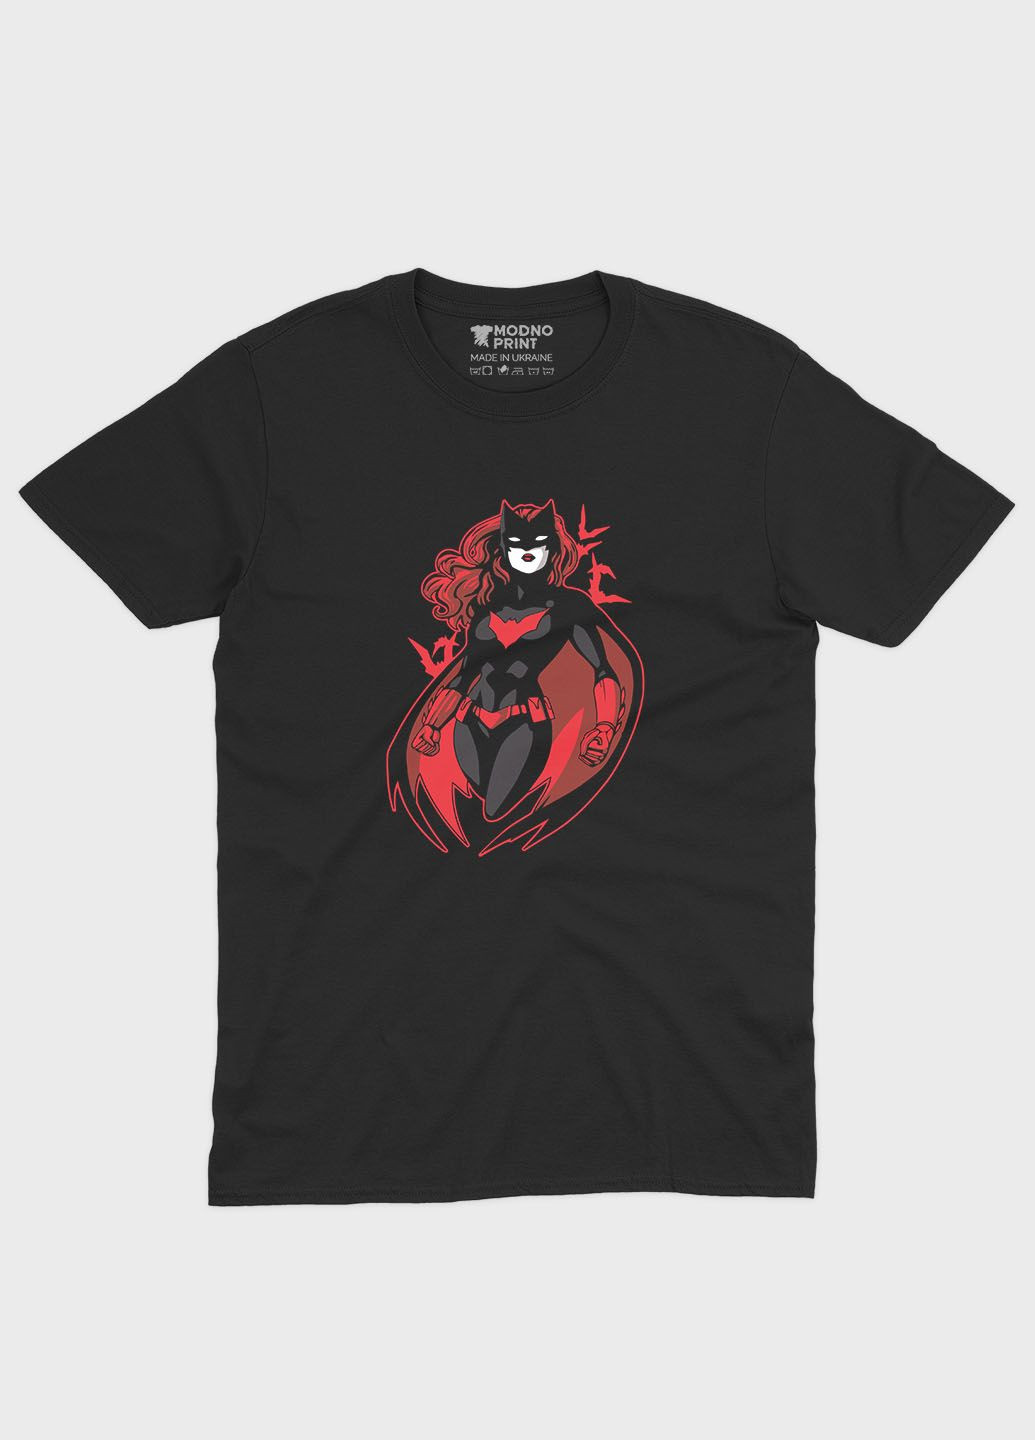 Черная демисезонная футболка для девочки с принтом супергероя - бетгерл (ts001-1-gl-006-002-001-g) Modno